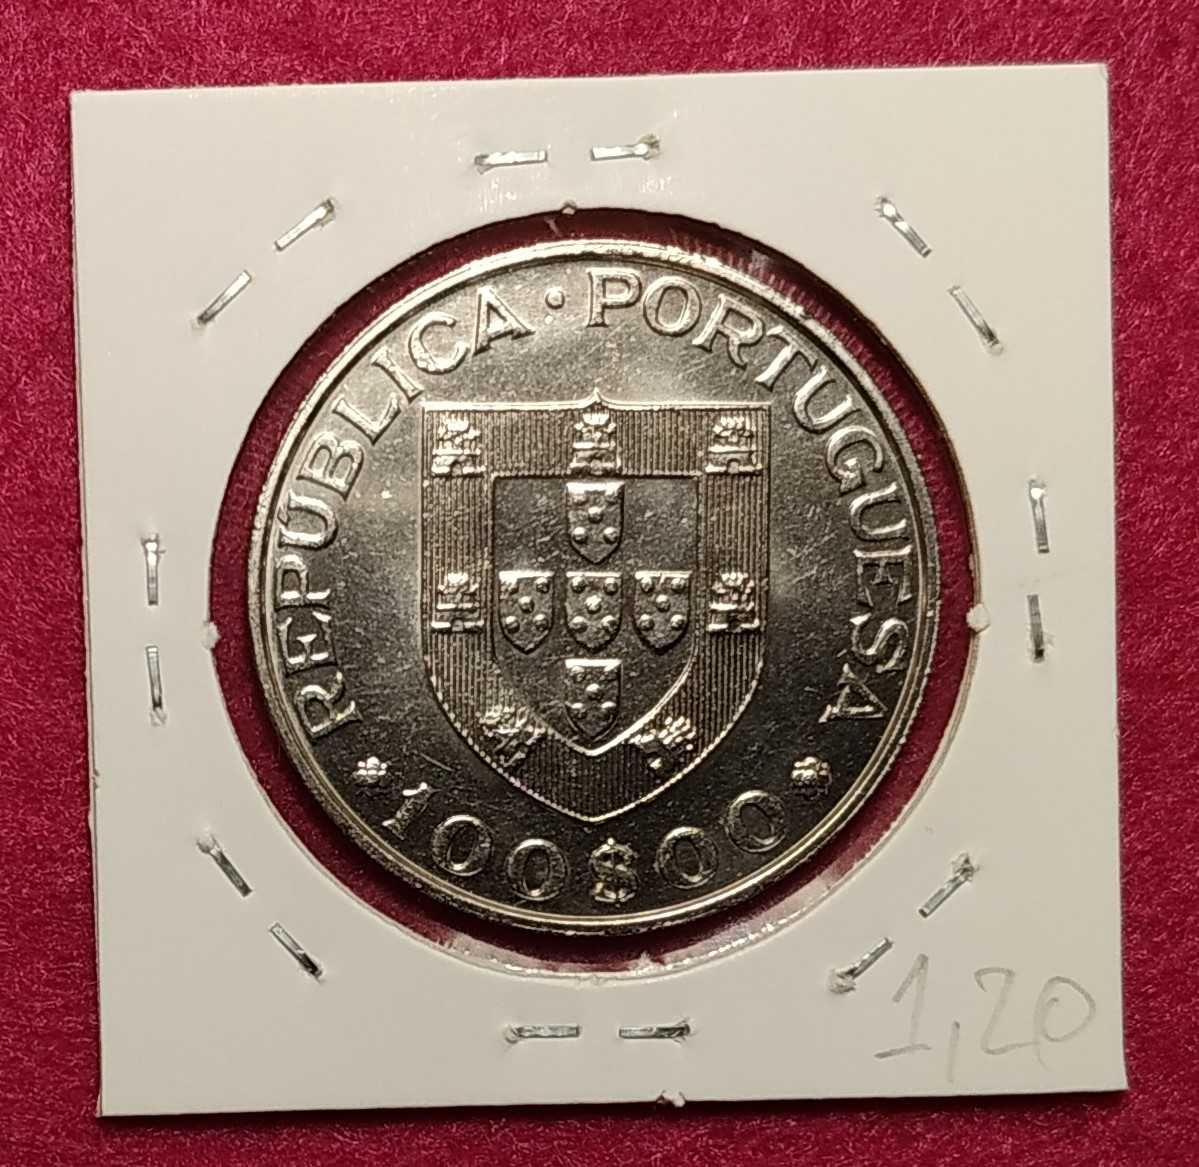 Portugal - moeda comemorativa de 100 escudos de 1982